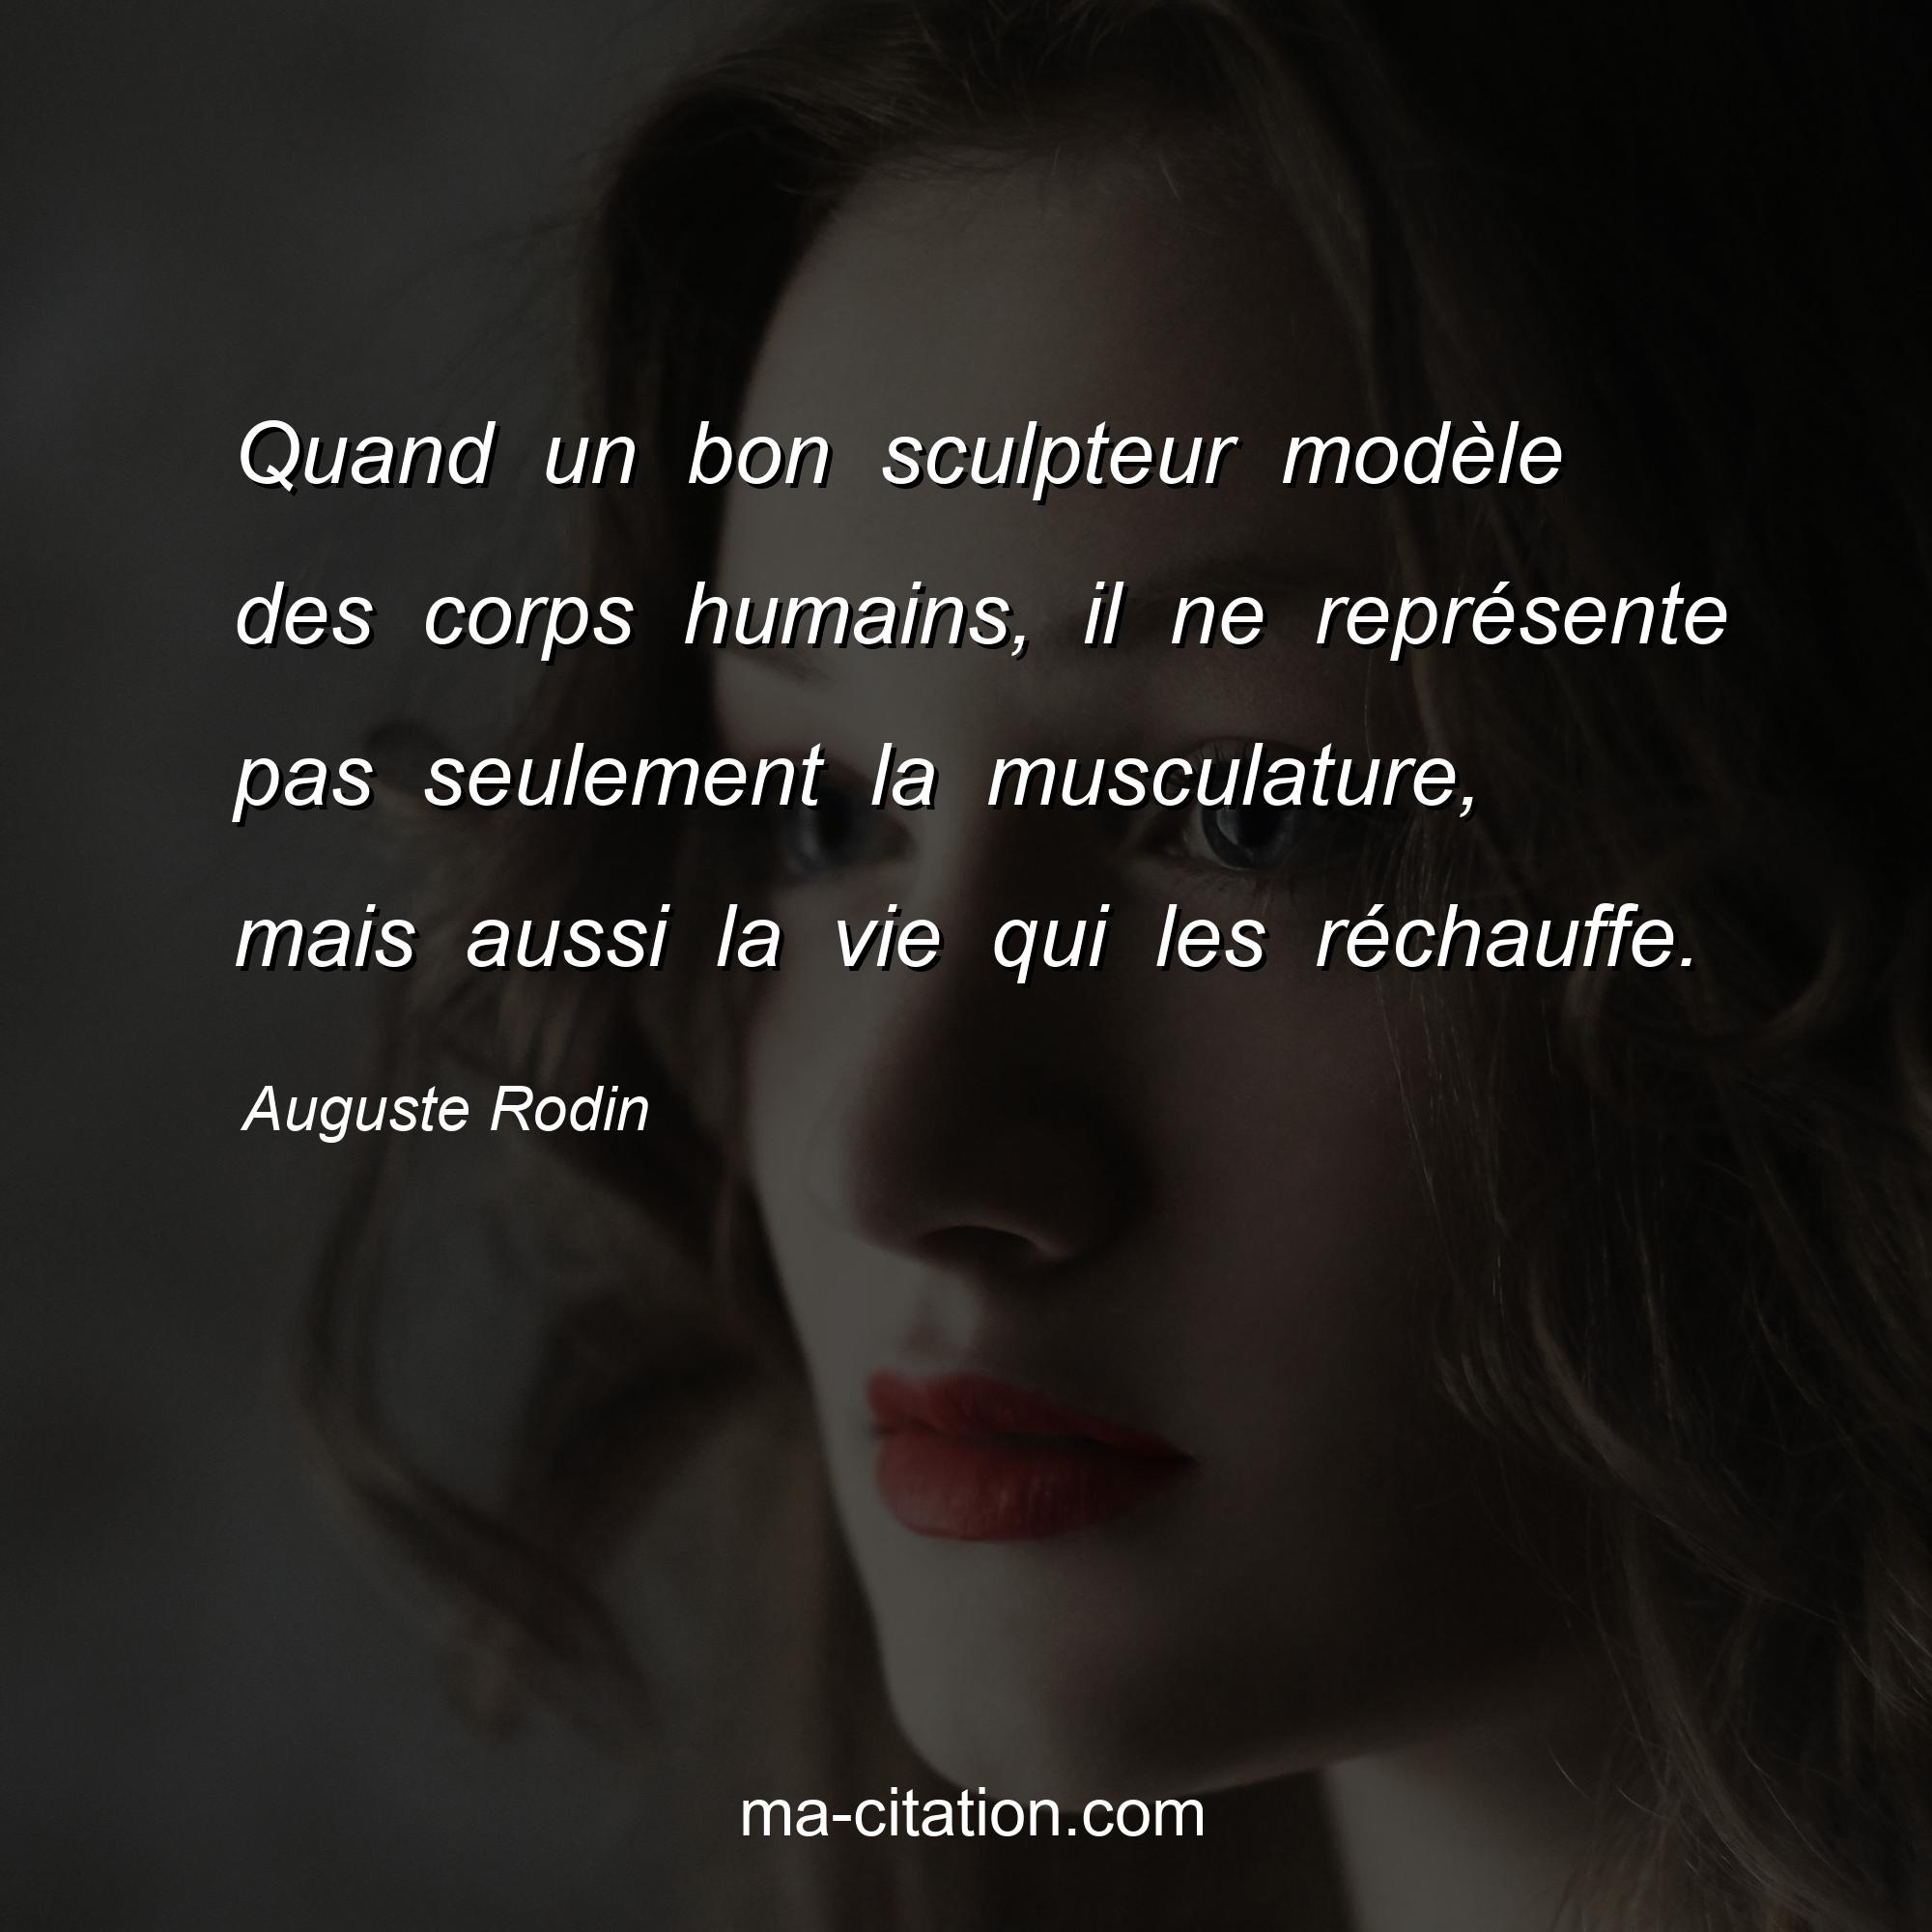 Auguste Rodin : Quand un bon sculpteur modèle des corps humains, il ne représente pas seulement la musculature, mais aussi la vie qui les réchauffe.